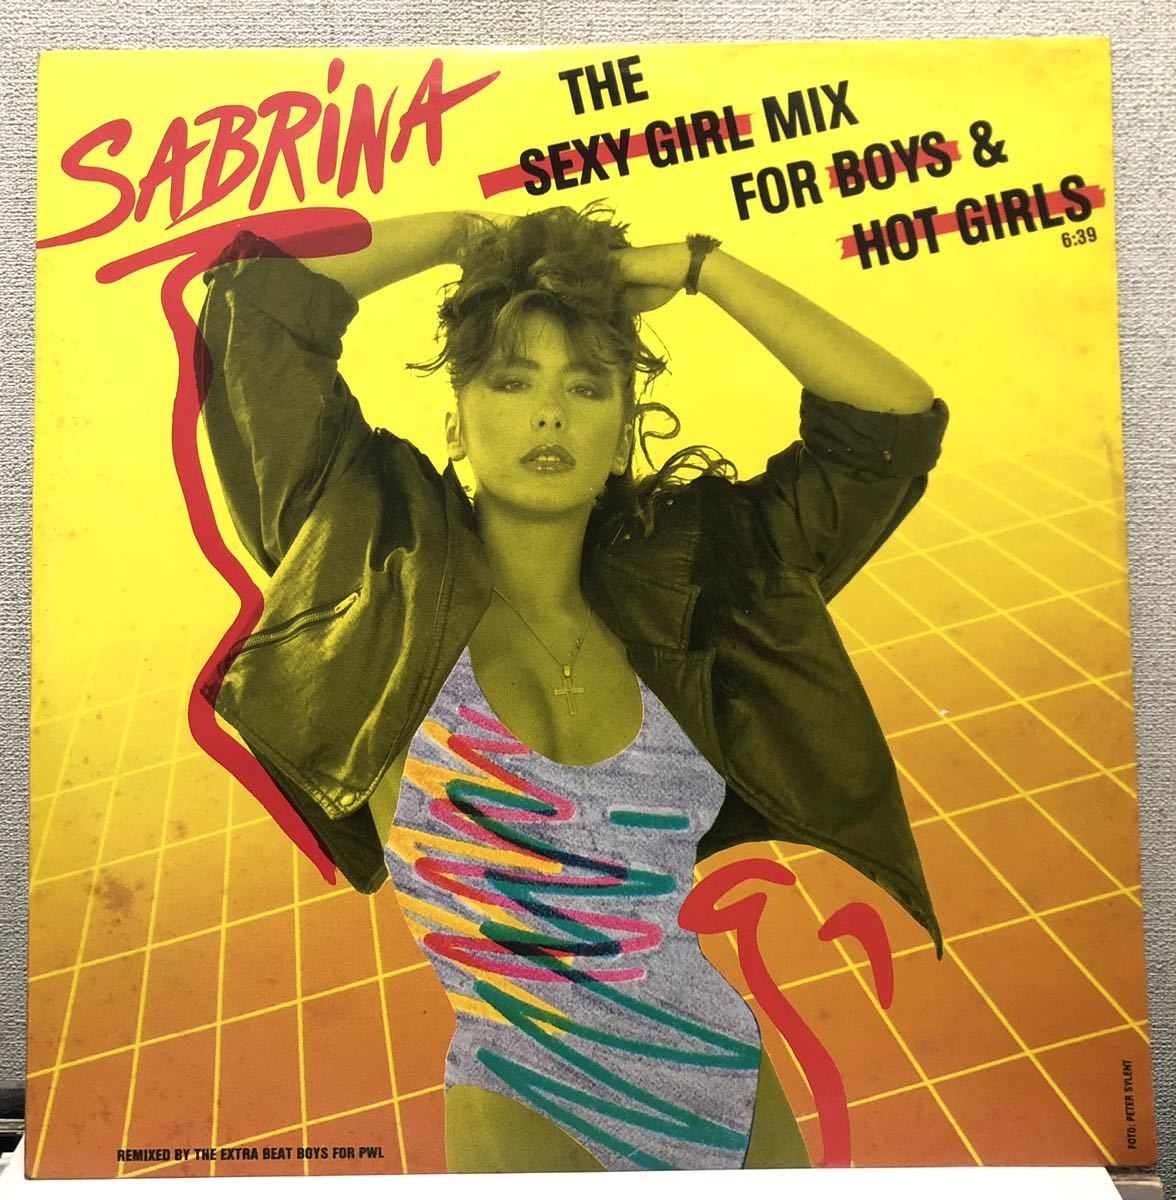 レア 倉庫出 1988 Sabrina / The Sexy Girl Mix For Boys & Hot Girls サブリナ Original Gema 12 ドイツ盤 Chic 6.20880 AE オリジナル_画像1